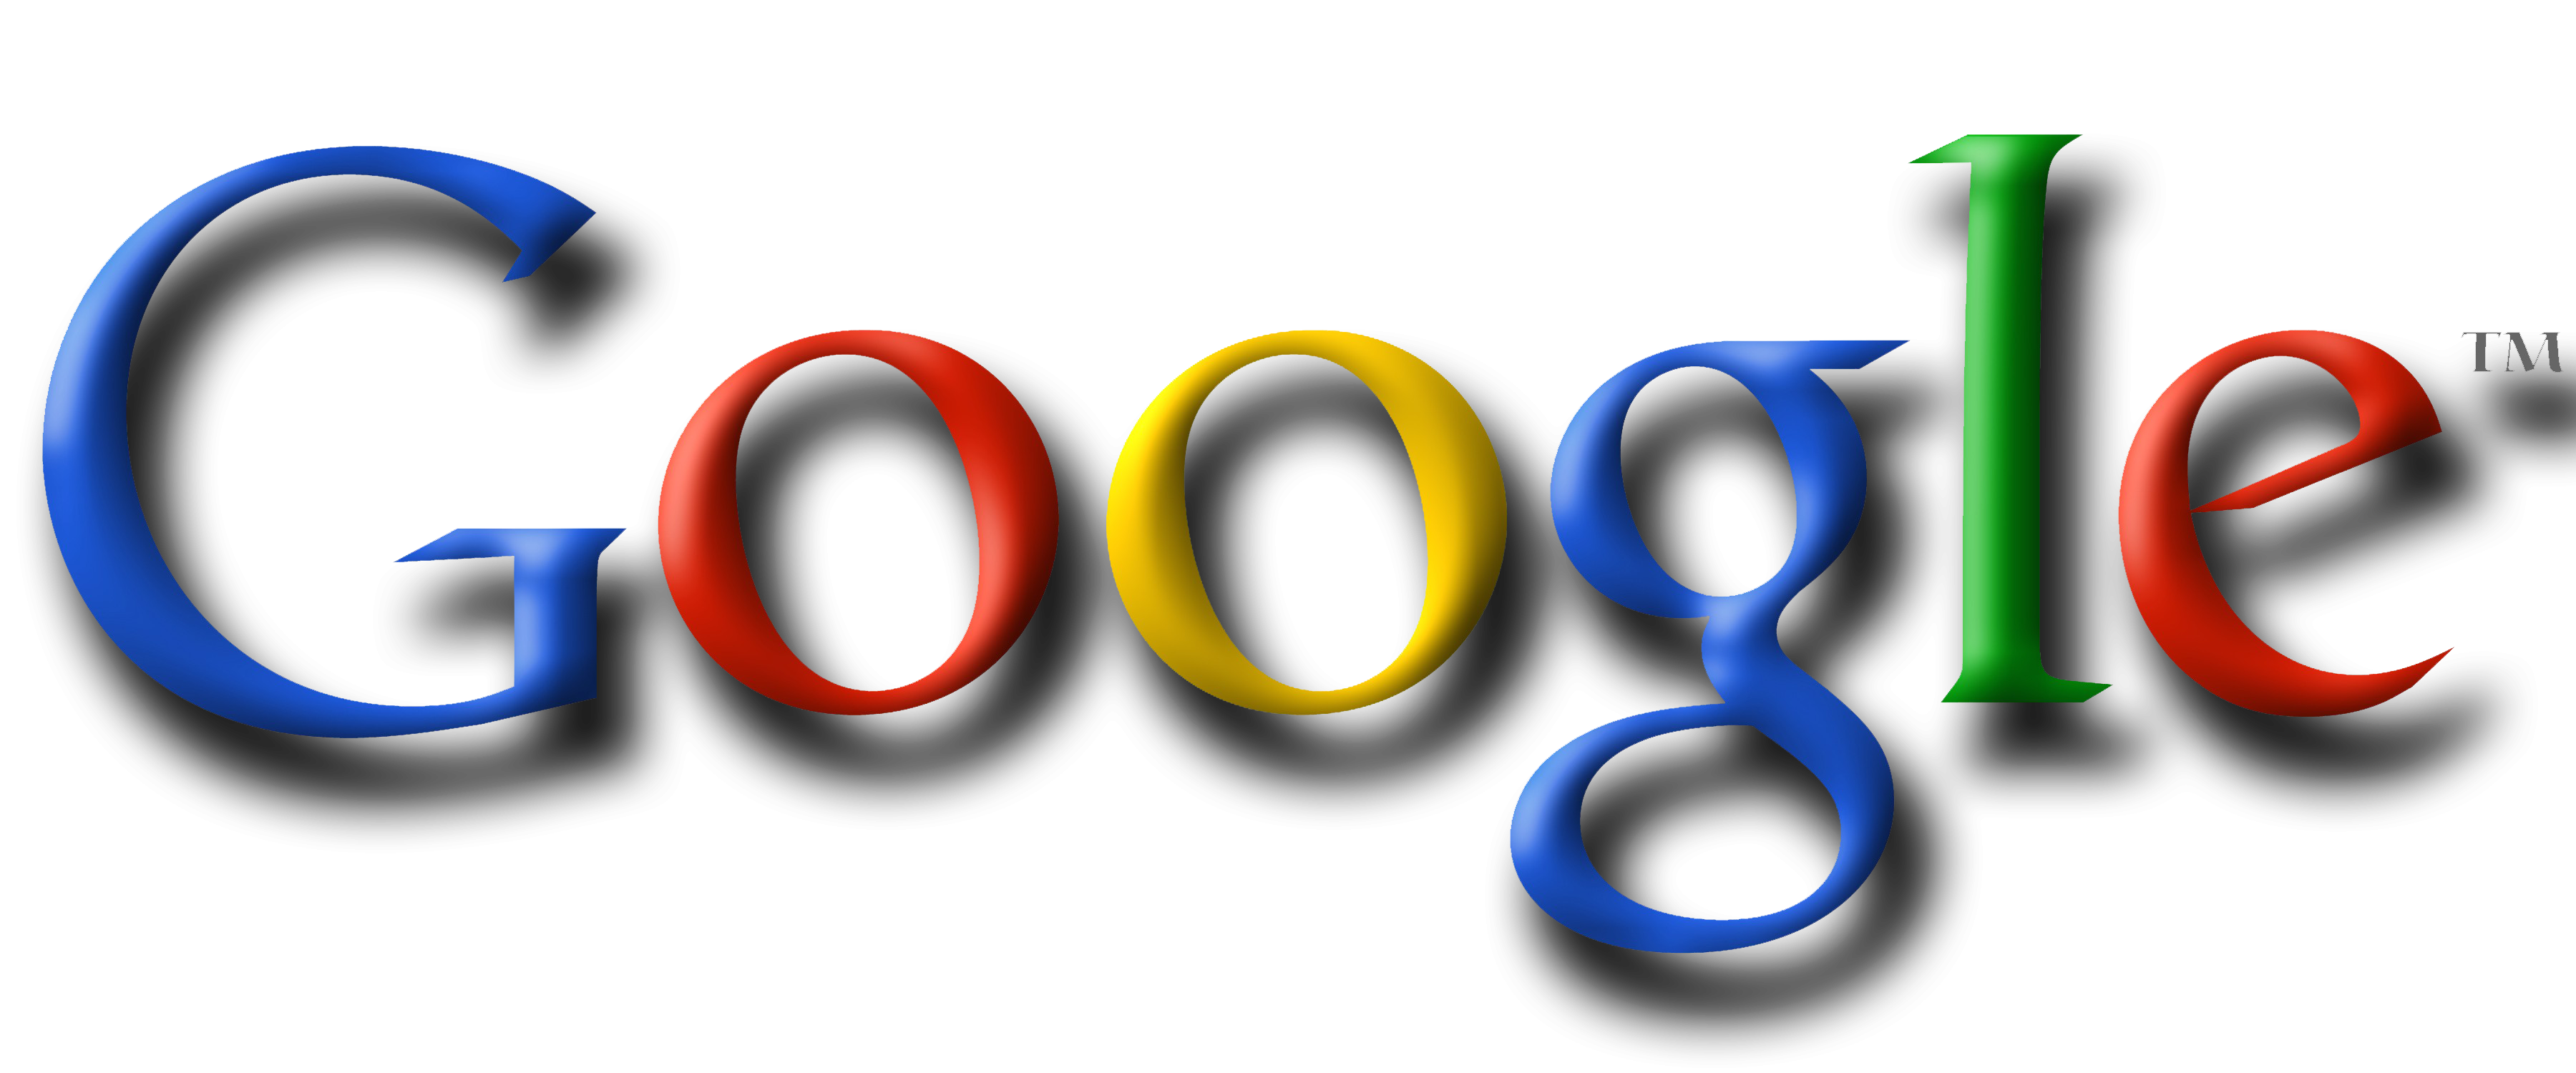 Google Logos Sample Images